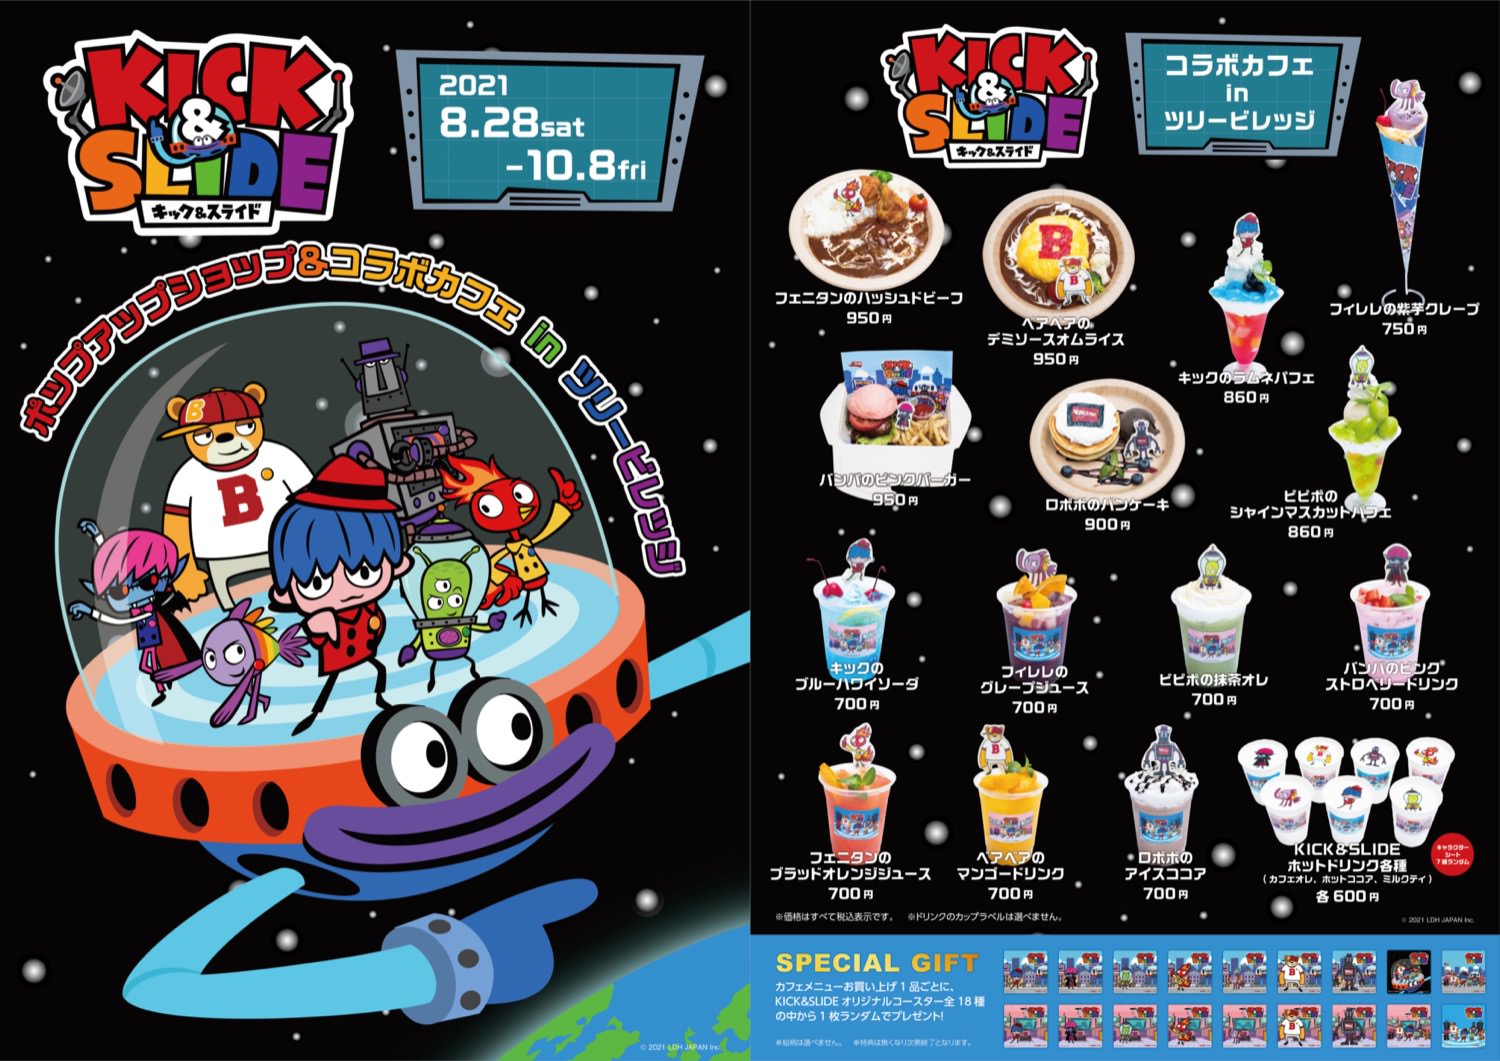 三代目JSBアニメ「KICK&SLIDE」カフェ&ショップ 8月28日より開催!